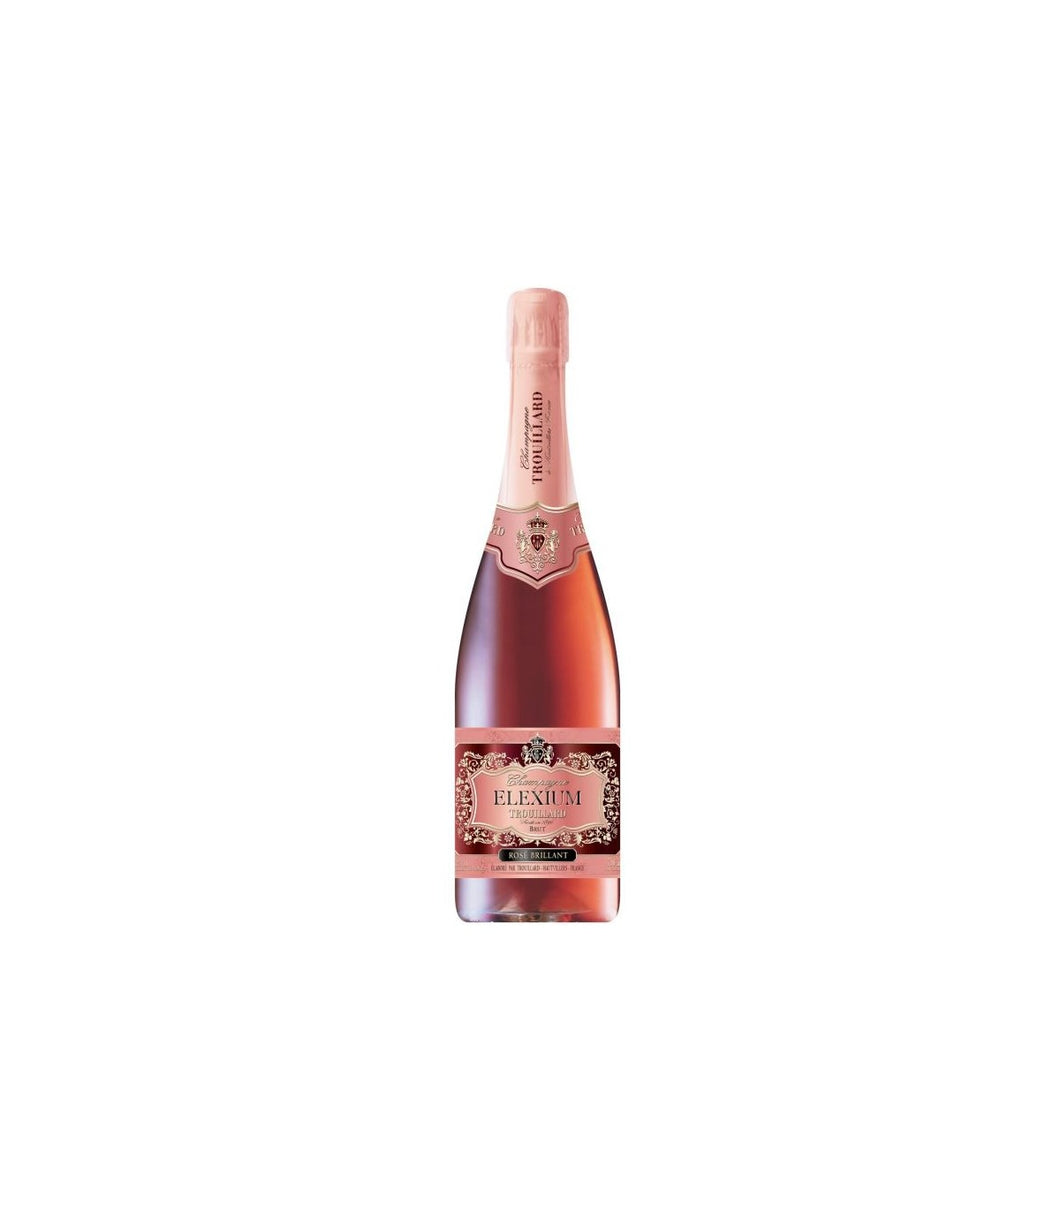 Trouillard Champagne Brut Elexium Rosé